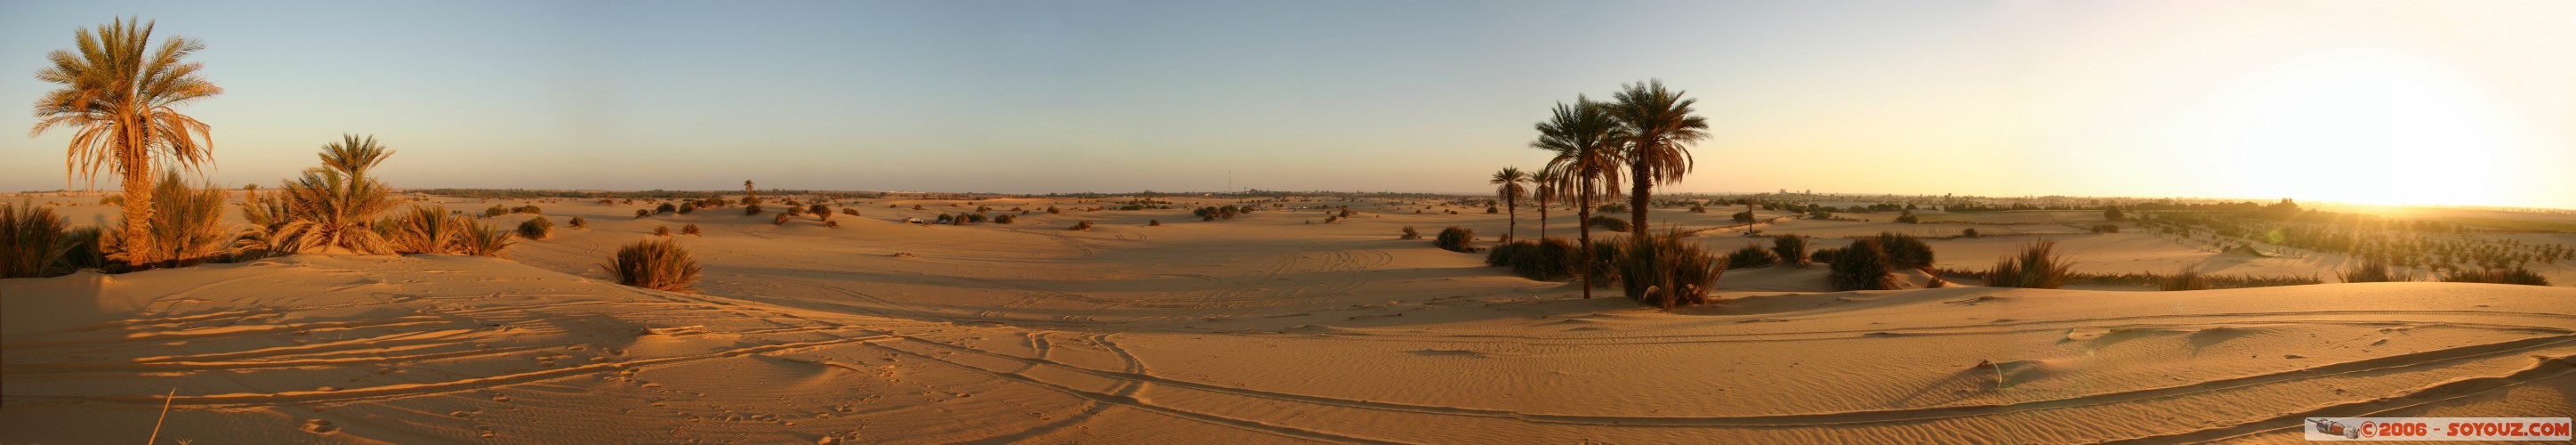 Panoramique sur l'oasis
Mots-clés: sunrise lev� de soleil desert